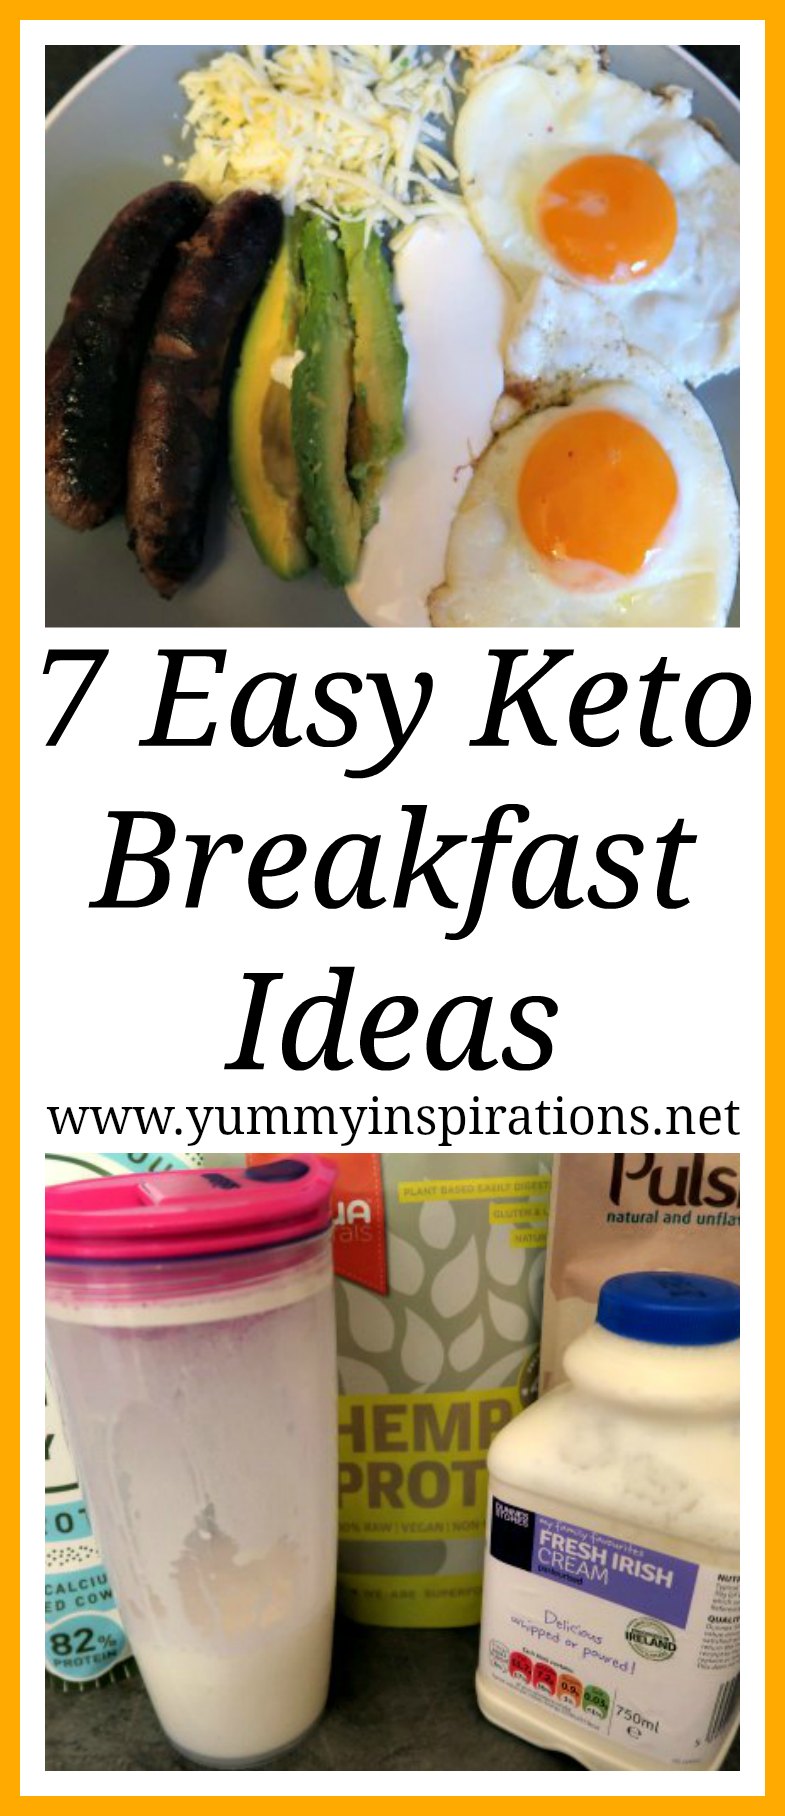 7 Easy Keto Breakfast Ideas - Low Carb Ketogenic Diet Breakfasts